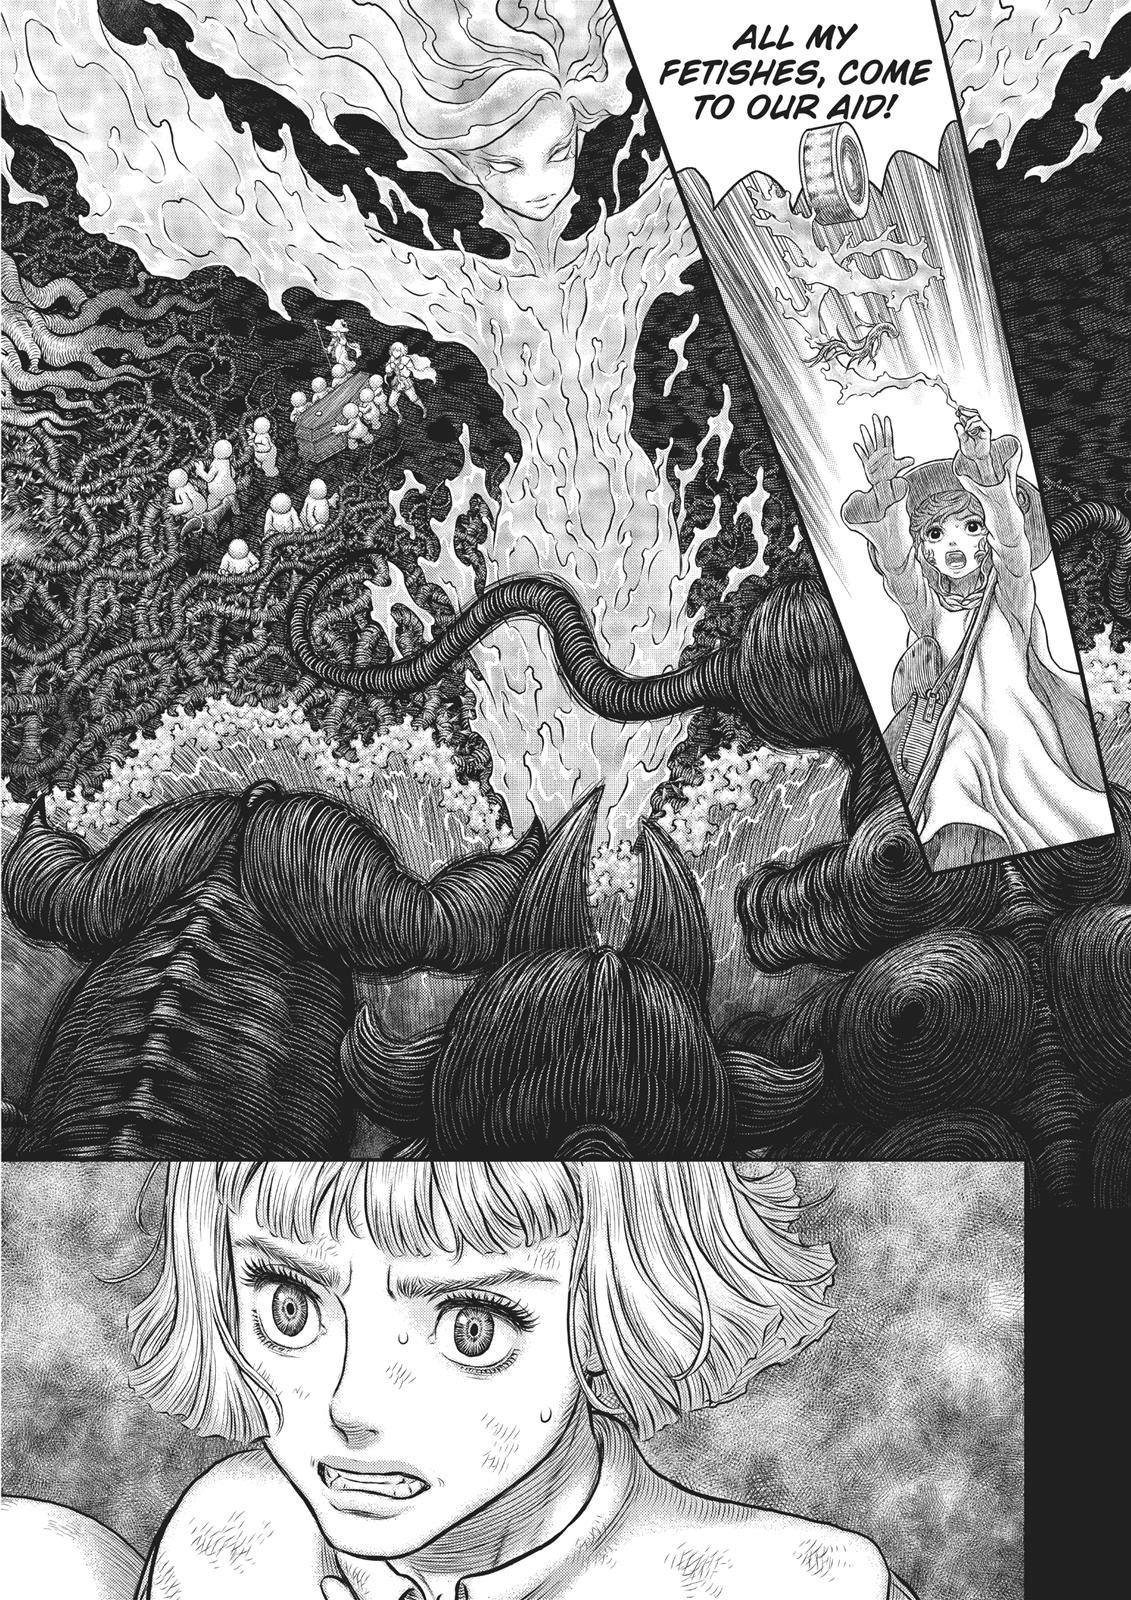 Berserk Manga Chapter 352 image 09